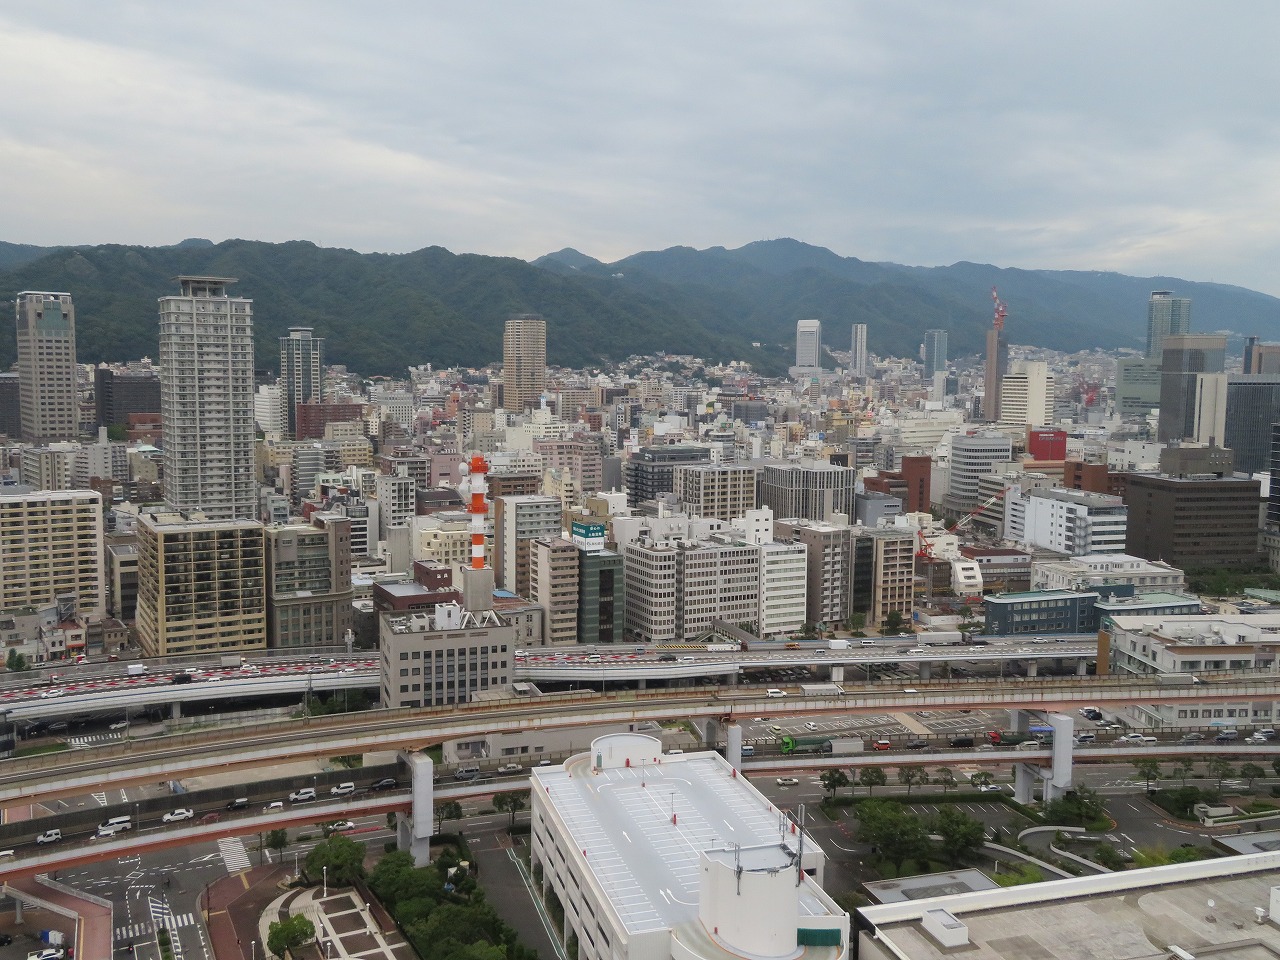 神戸市は海側の中心部は平坦なものの、山側に向かうと非常に高低差があり、山中を切り開いた住宅団地も多く、価格差が大きい